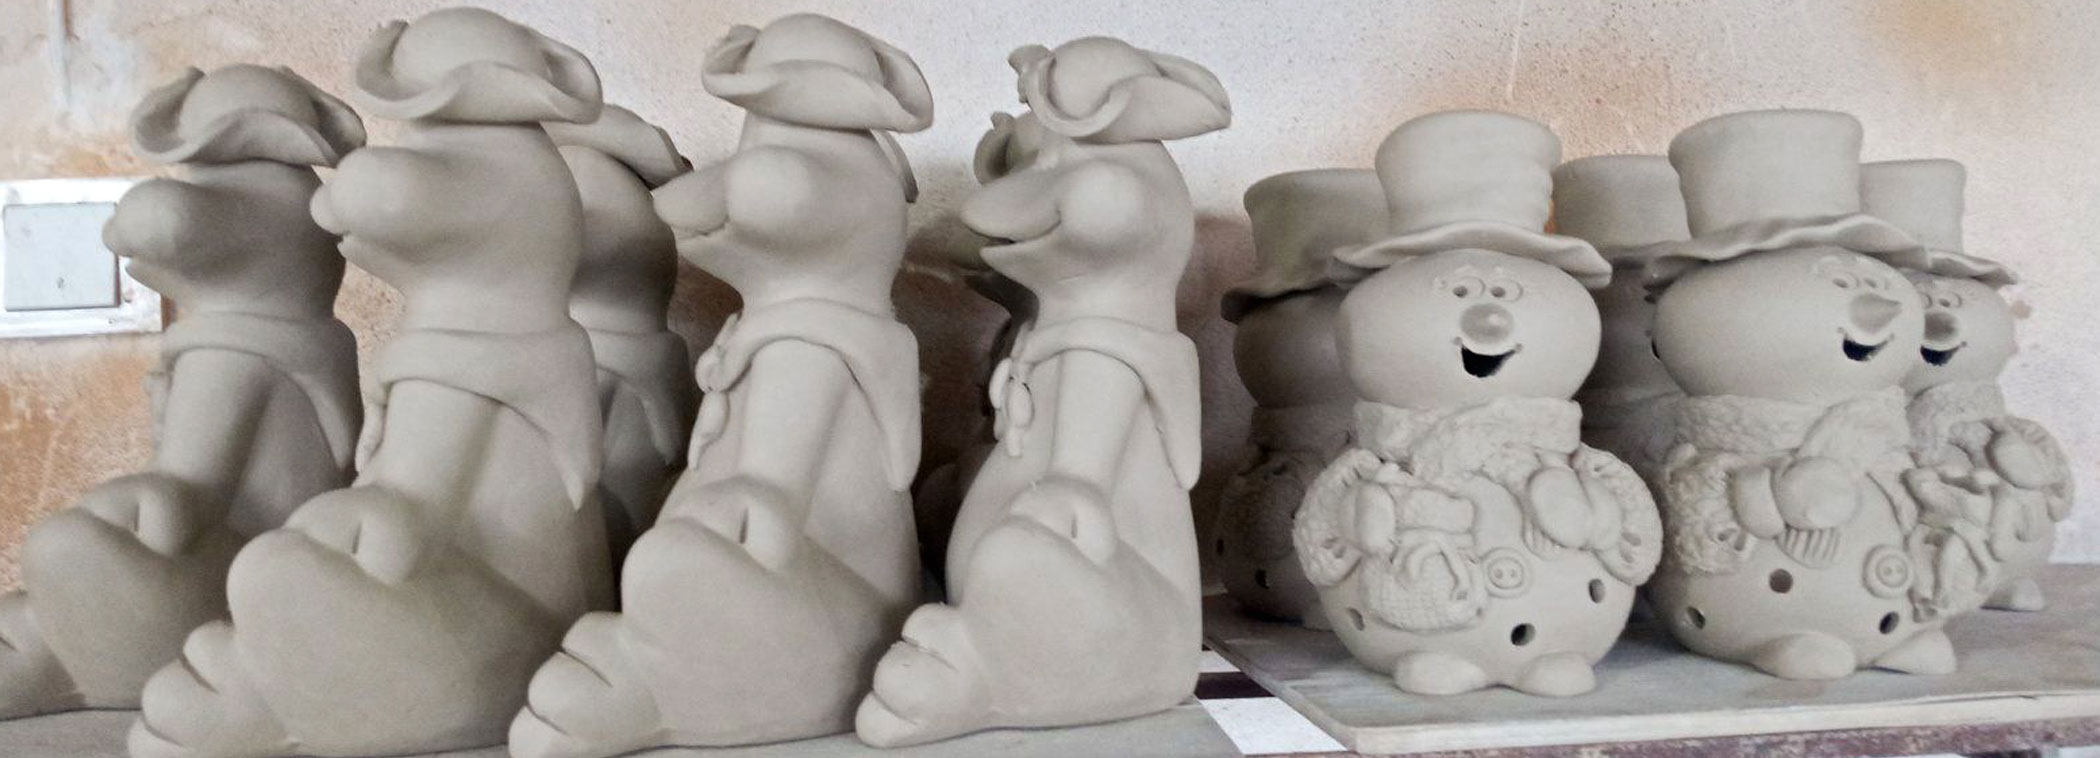 Keramik-Figuren, hergestellt in Handarbeit